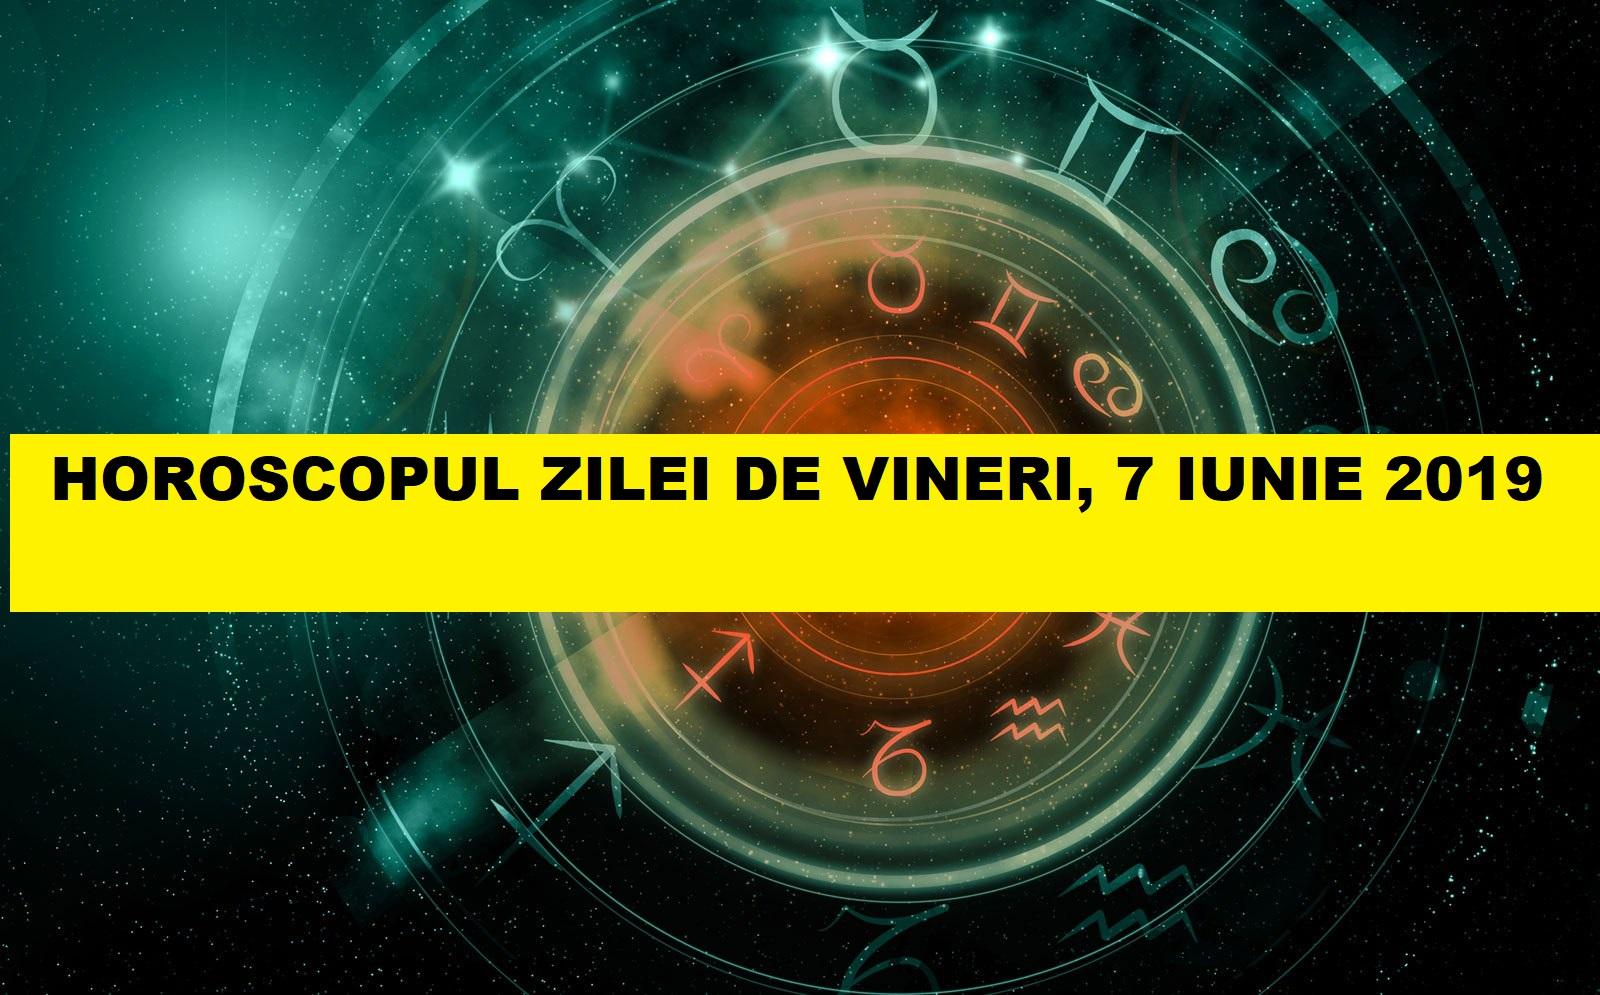 Horoscop zilnic: horoscopul zilei 7 iunie 2019. Putere și succes pentru Balanțe